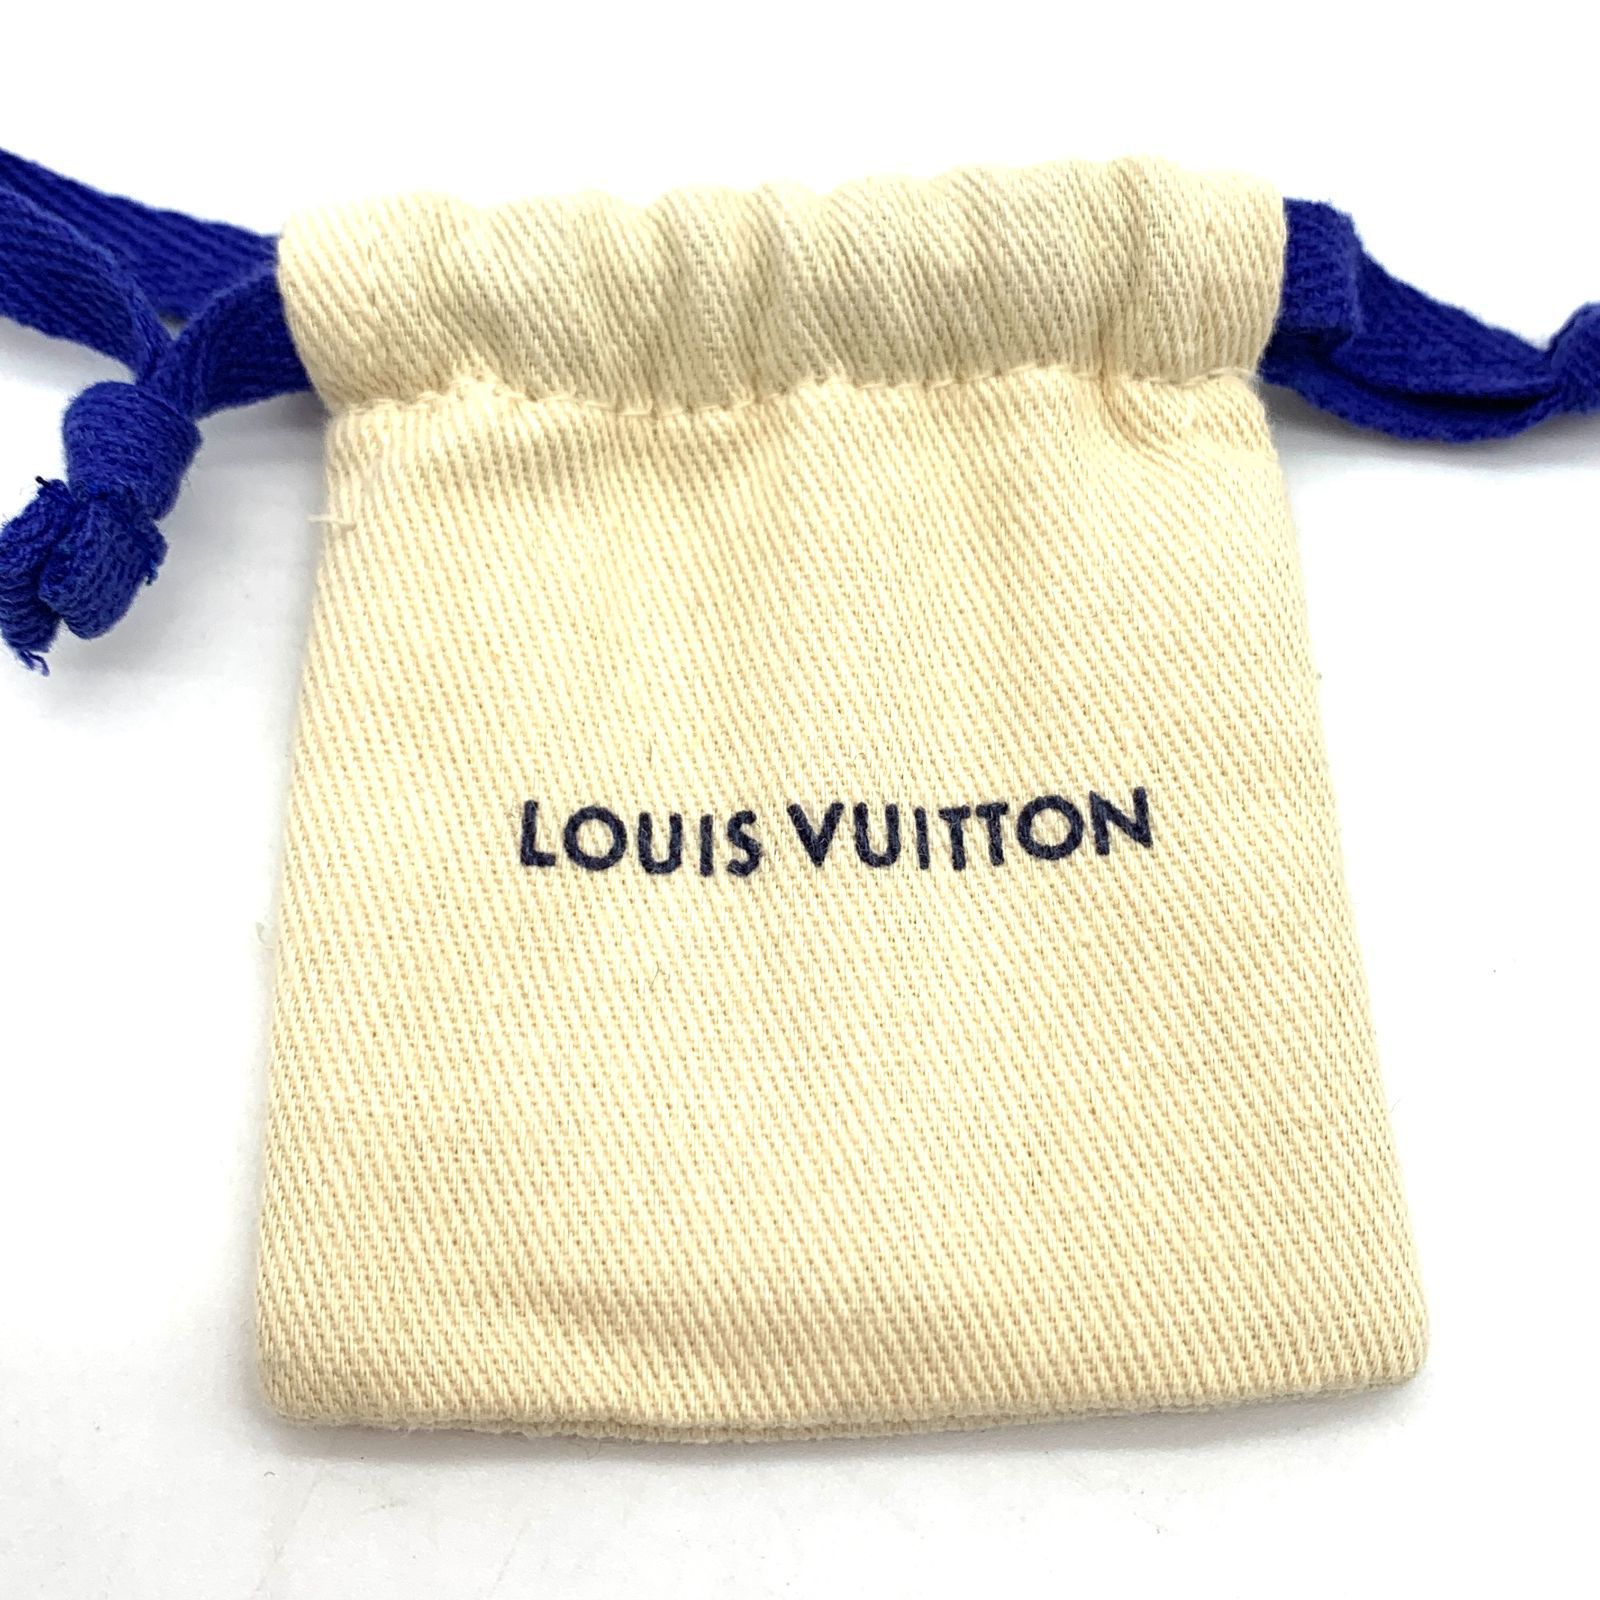 Louis Vuitton/ルイヴィトン ブックル ドレイユ LV アイコニック ストラス ピアス ゴールド M00609 付属品あり